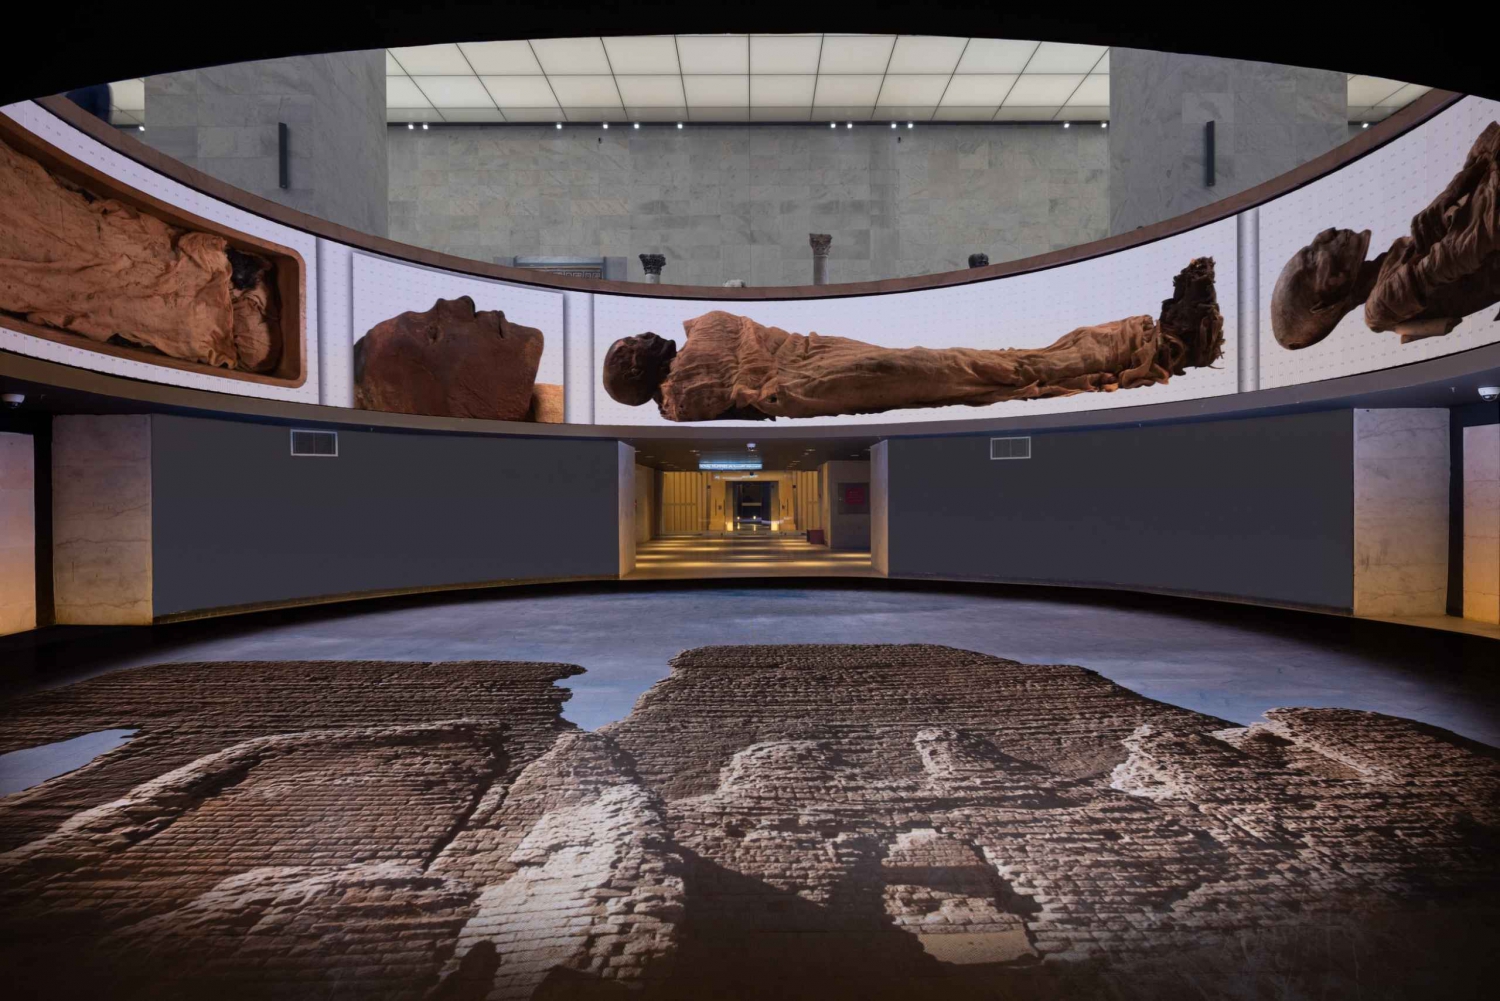 QR-entrébiljett National Museum of Egyptian Civilization